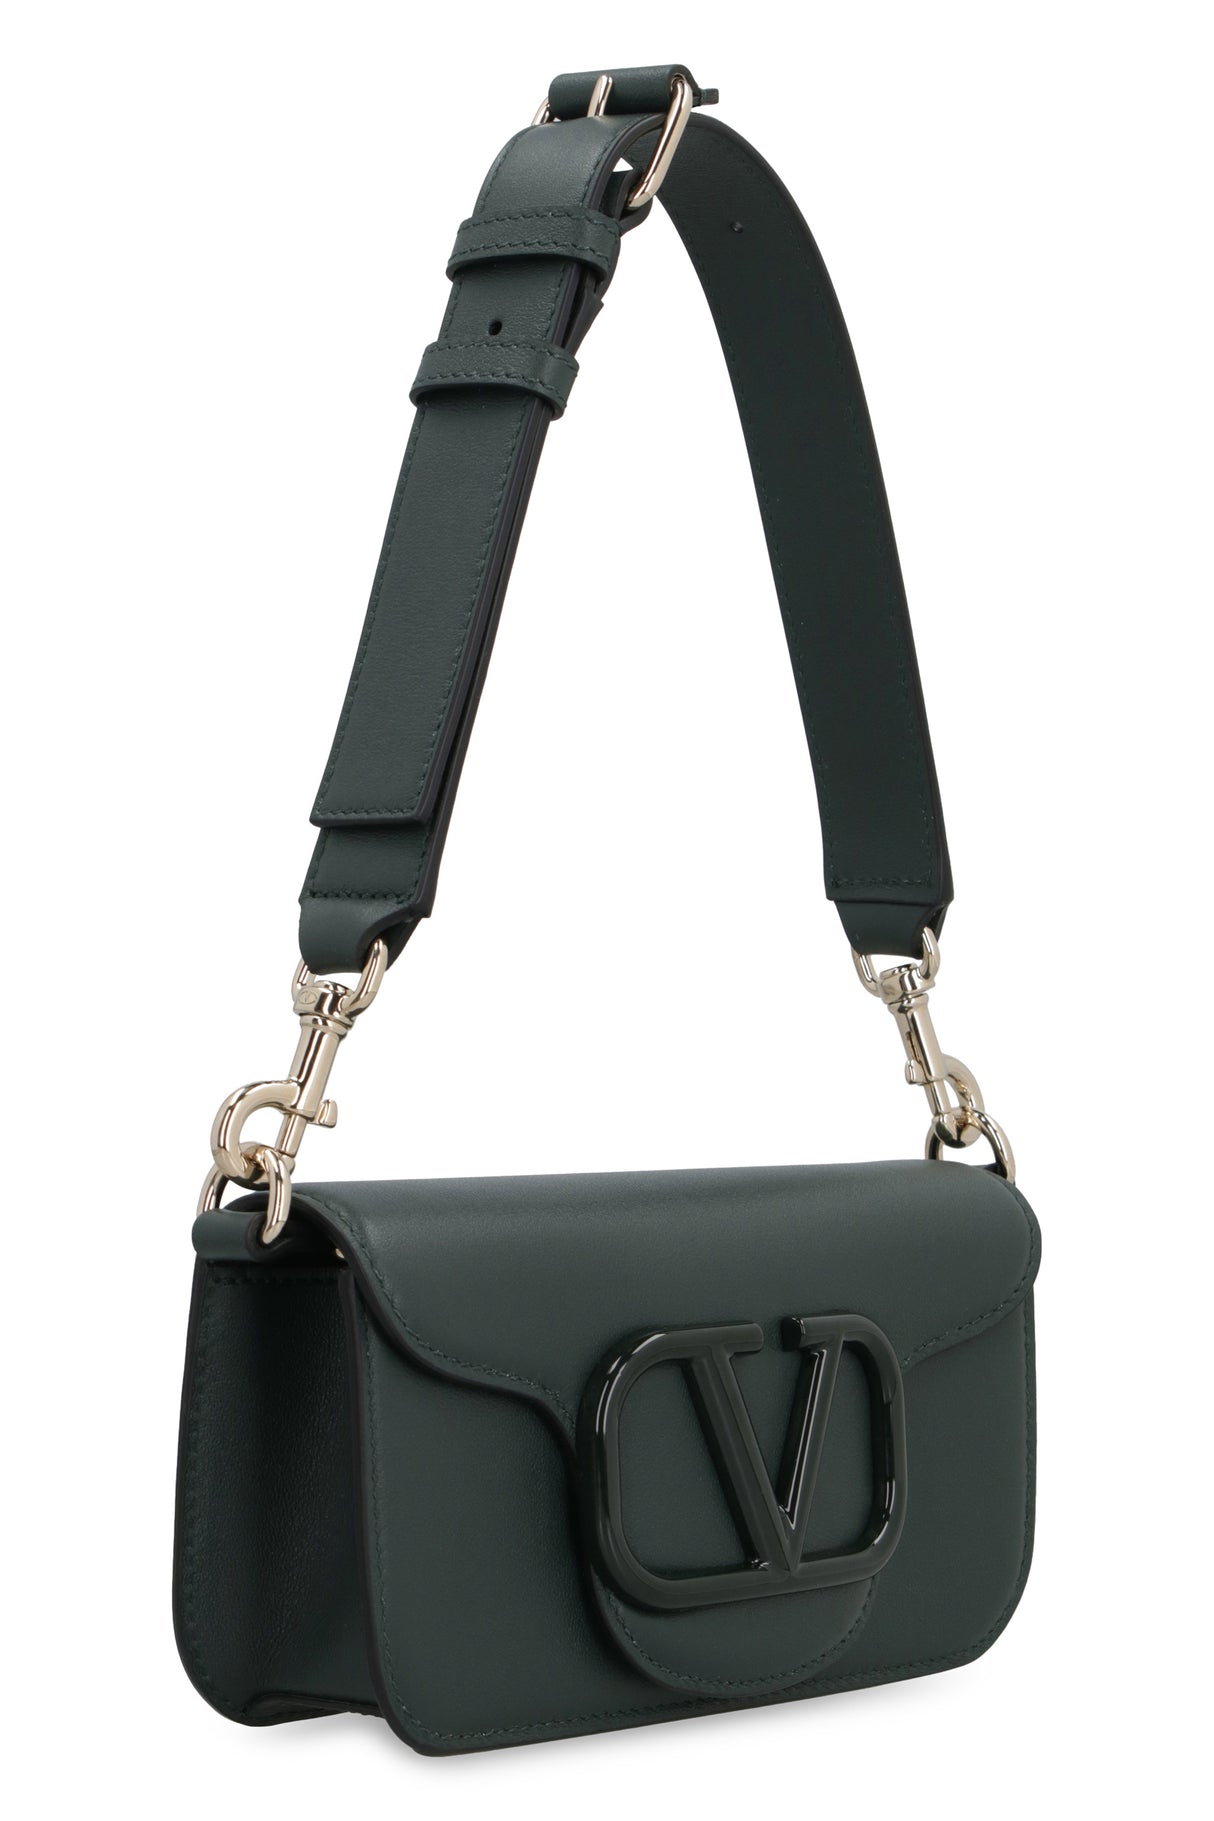 Túi xách đeo chéo da bò xanh lá FW23 - Bộ sưu tập FW23